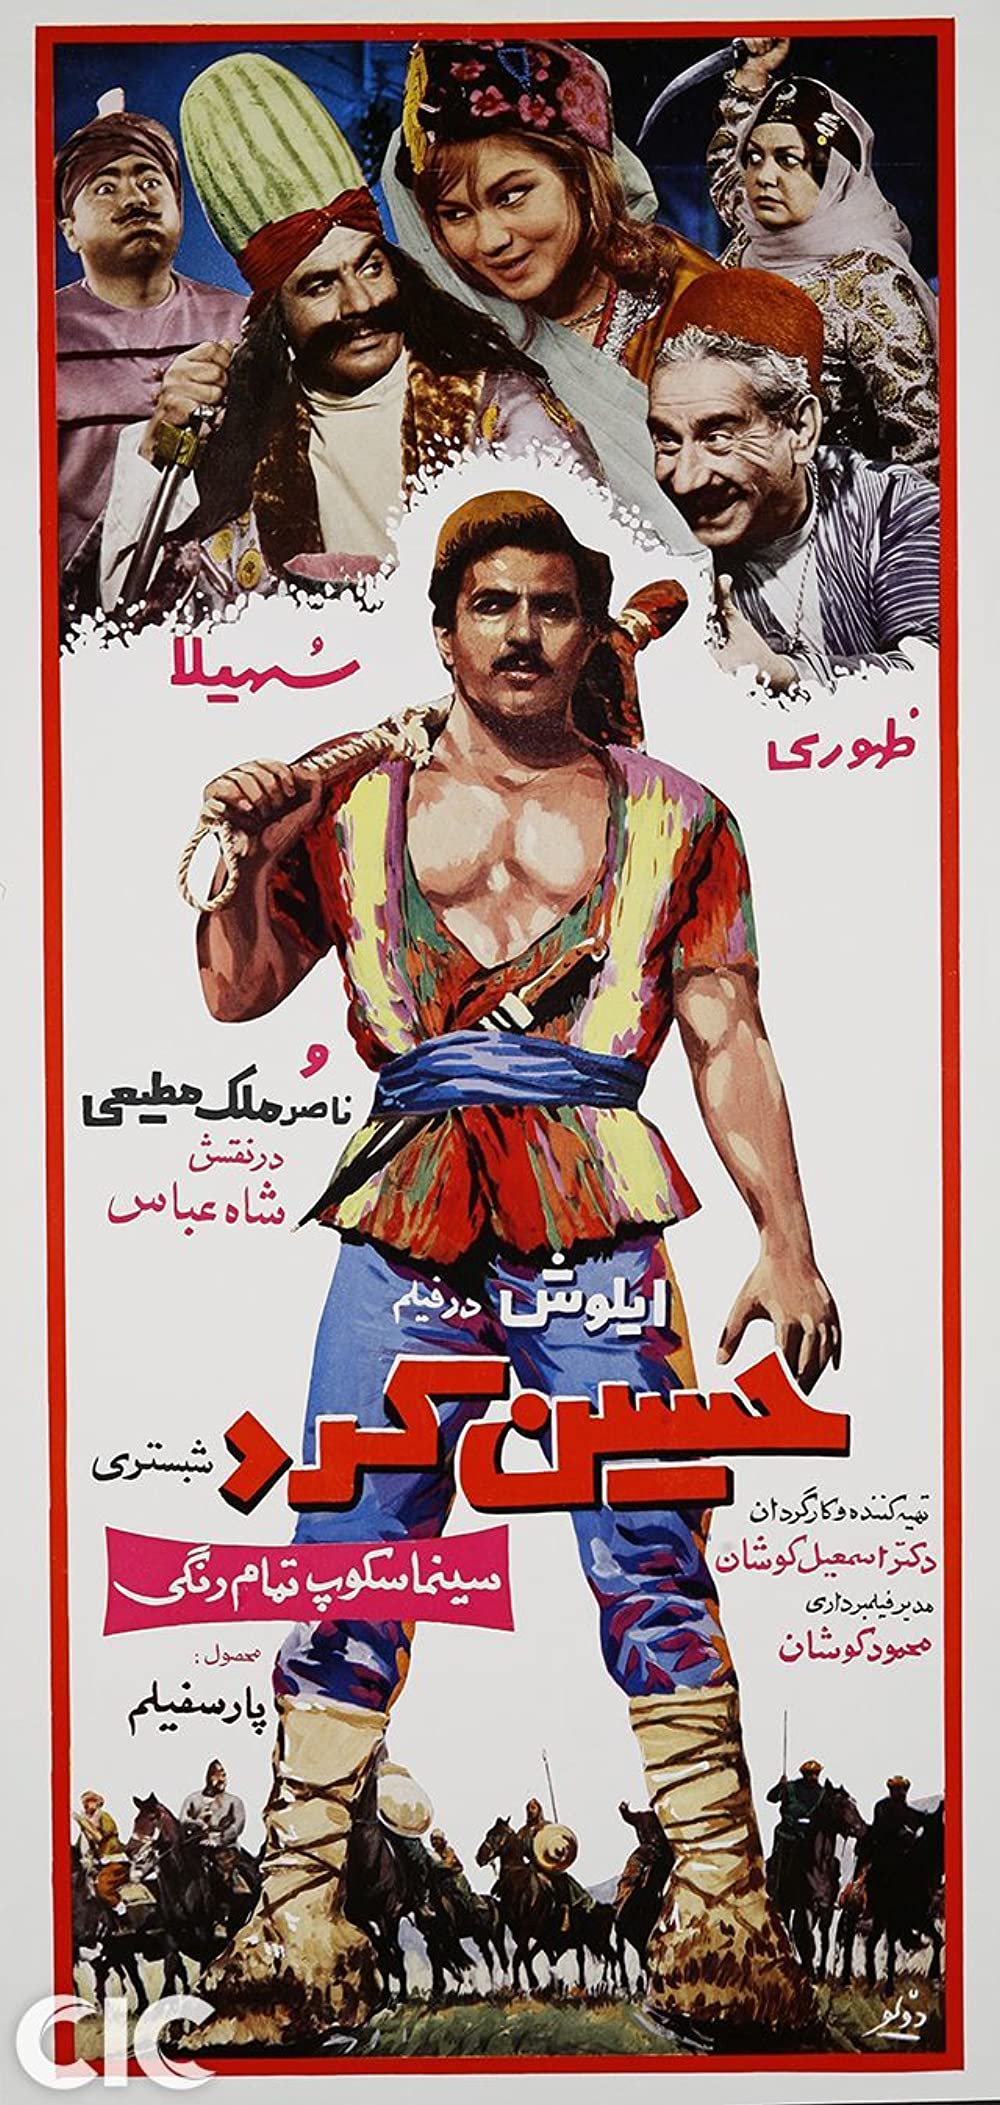 affiche du film Hossein Kord Shabestari